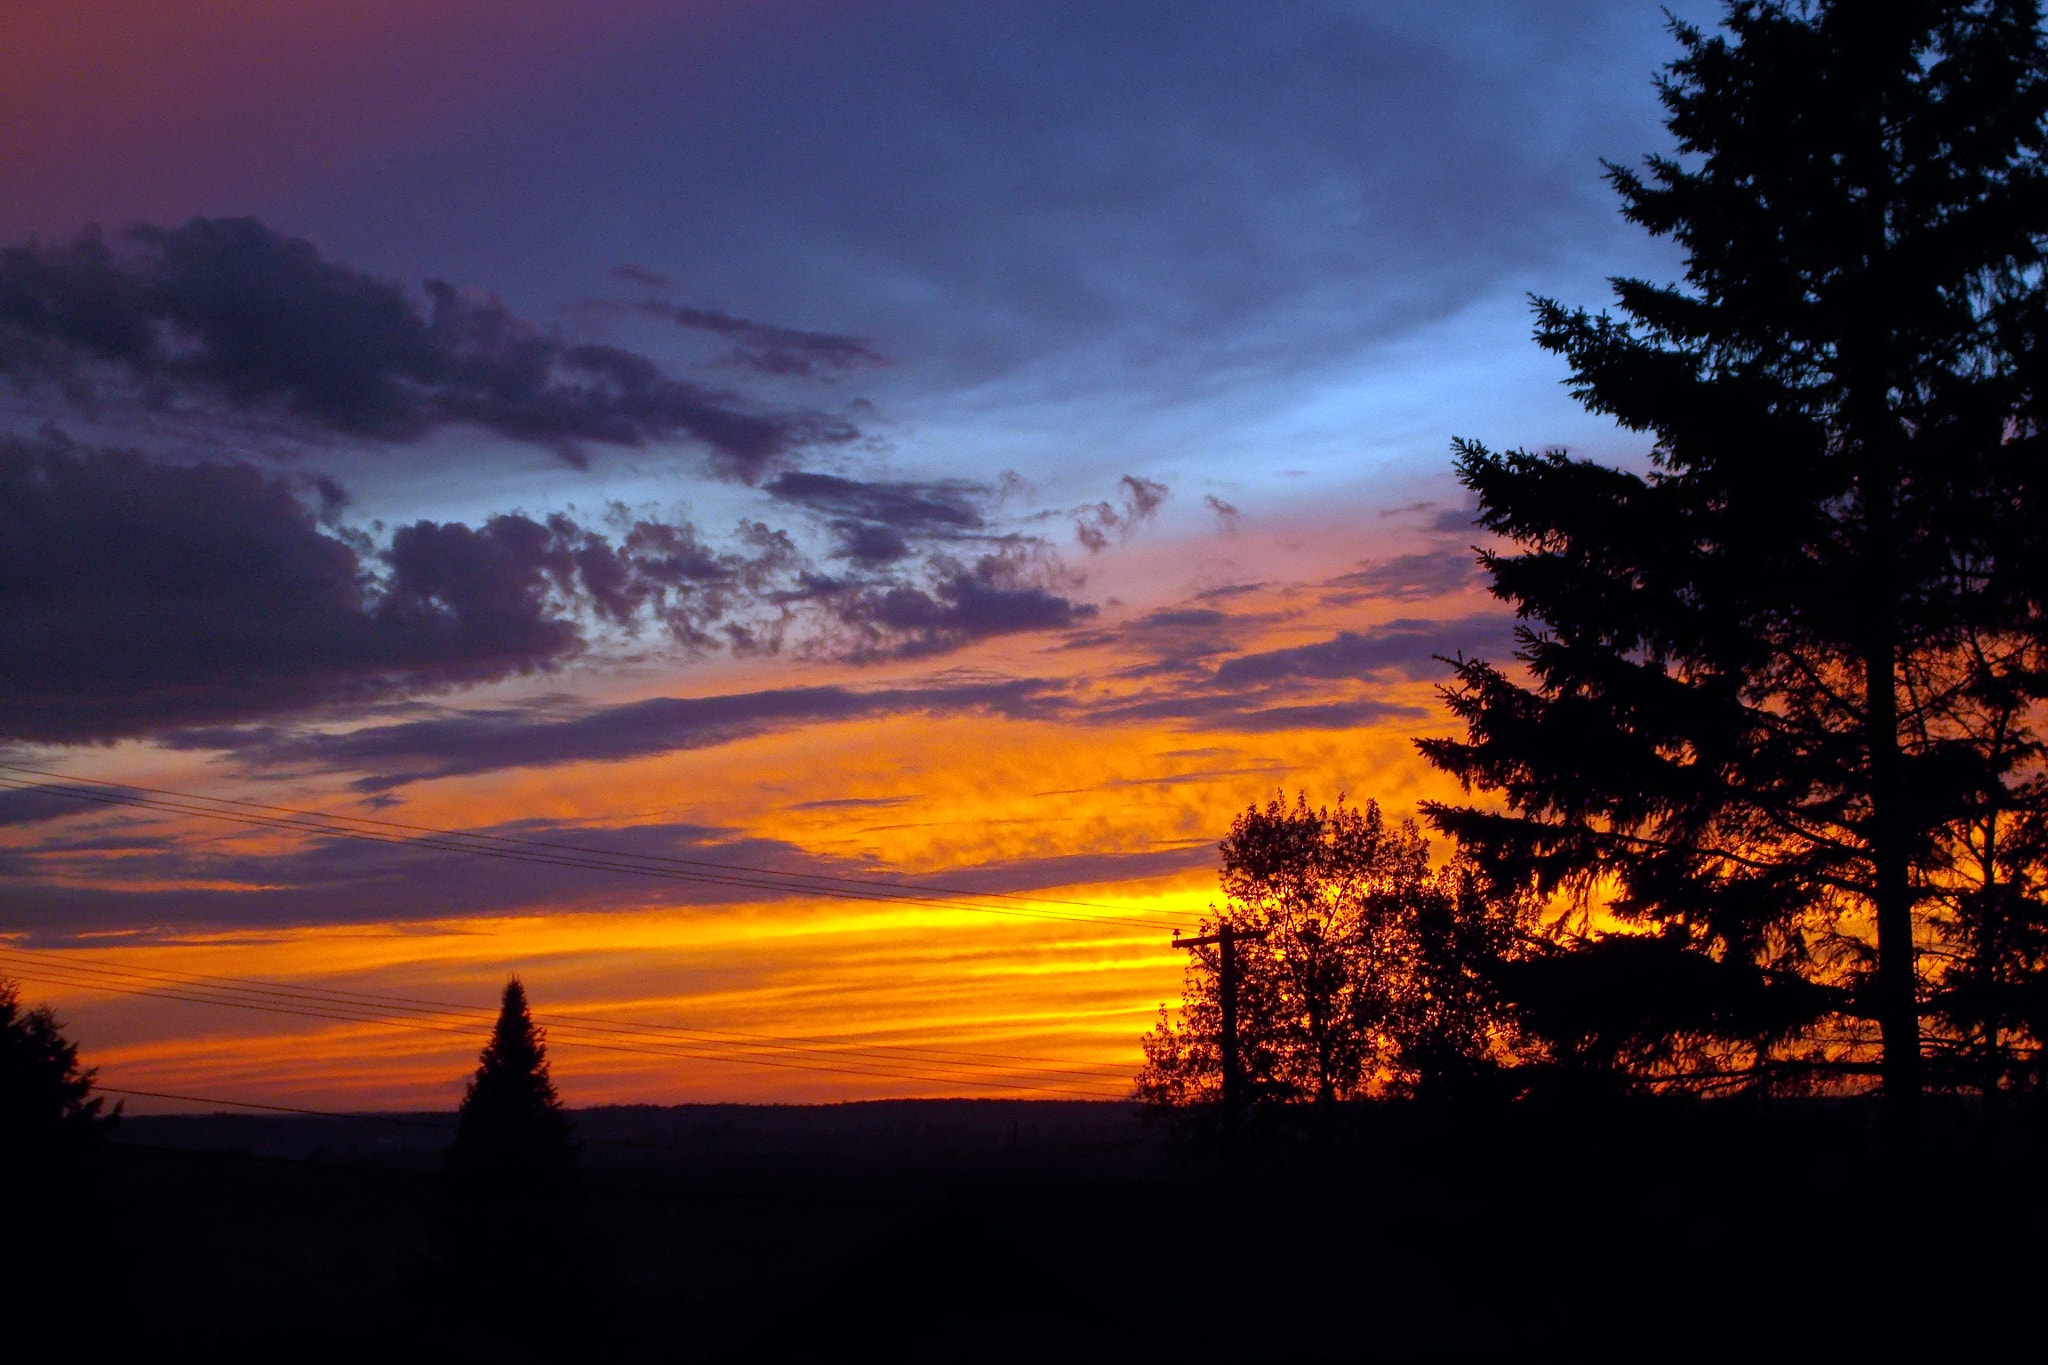 Nikon COOLPIX L27 sample photo. Spectacular sunset photography